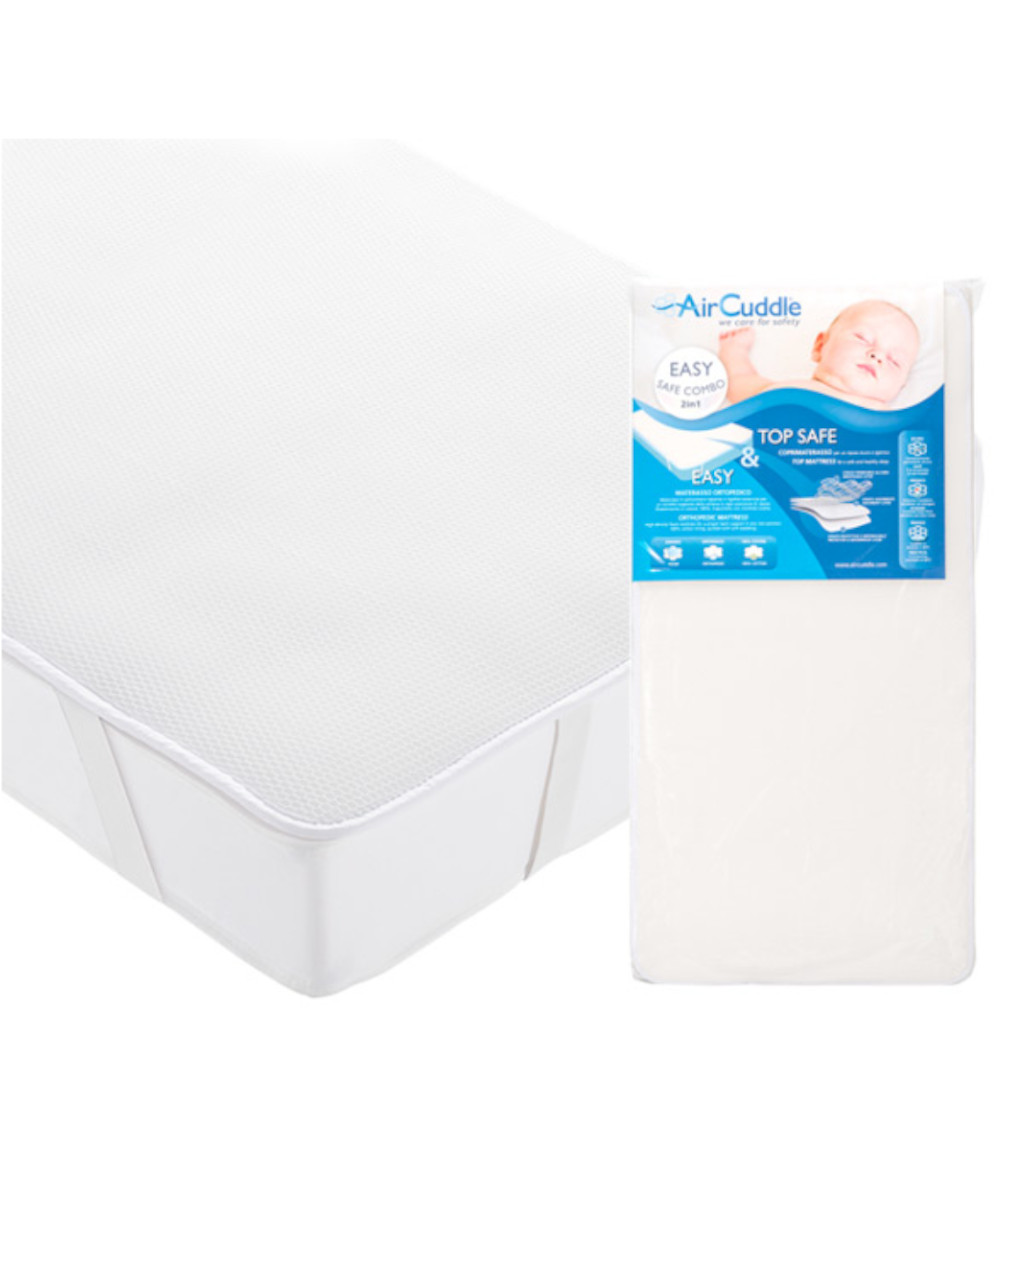 Easy safe combo materasso + top safe coprimaterasso traspirante 3 strati per lettino - AirCuddle